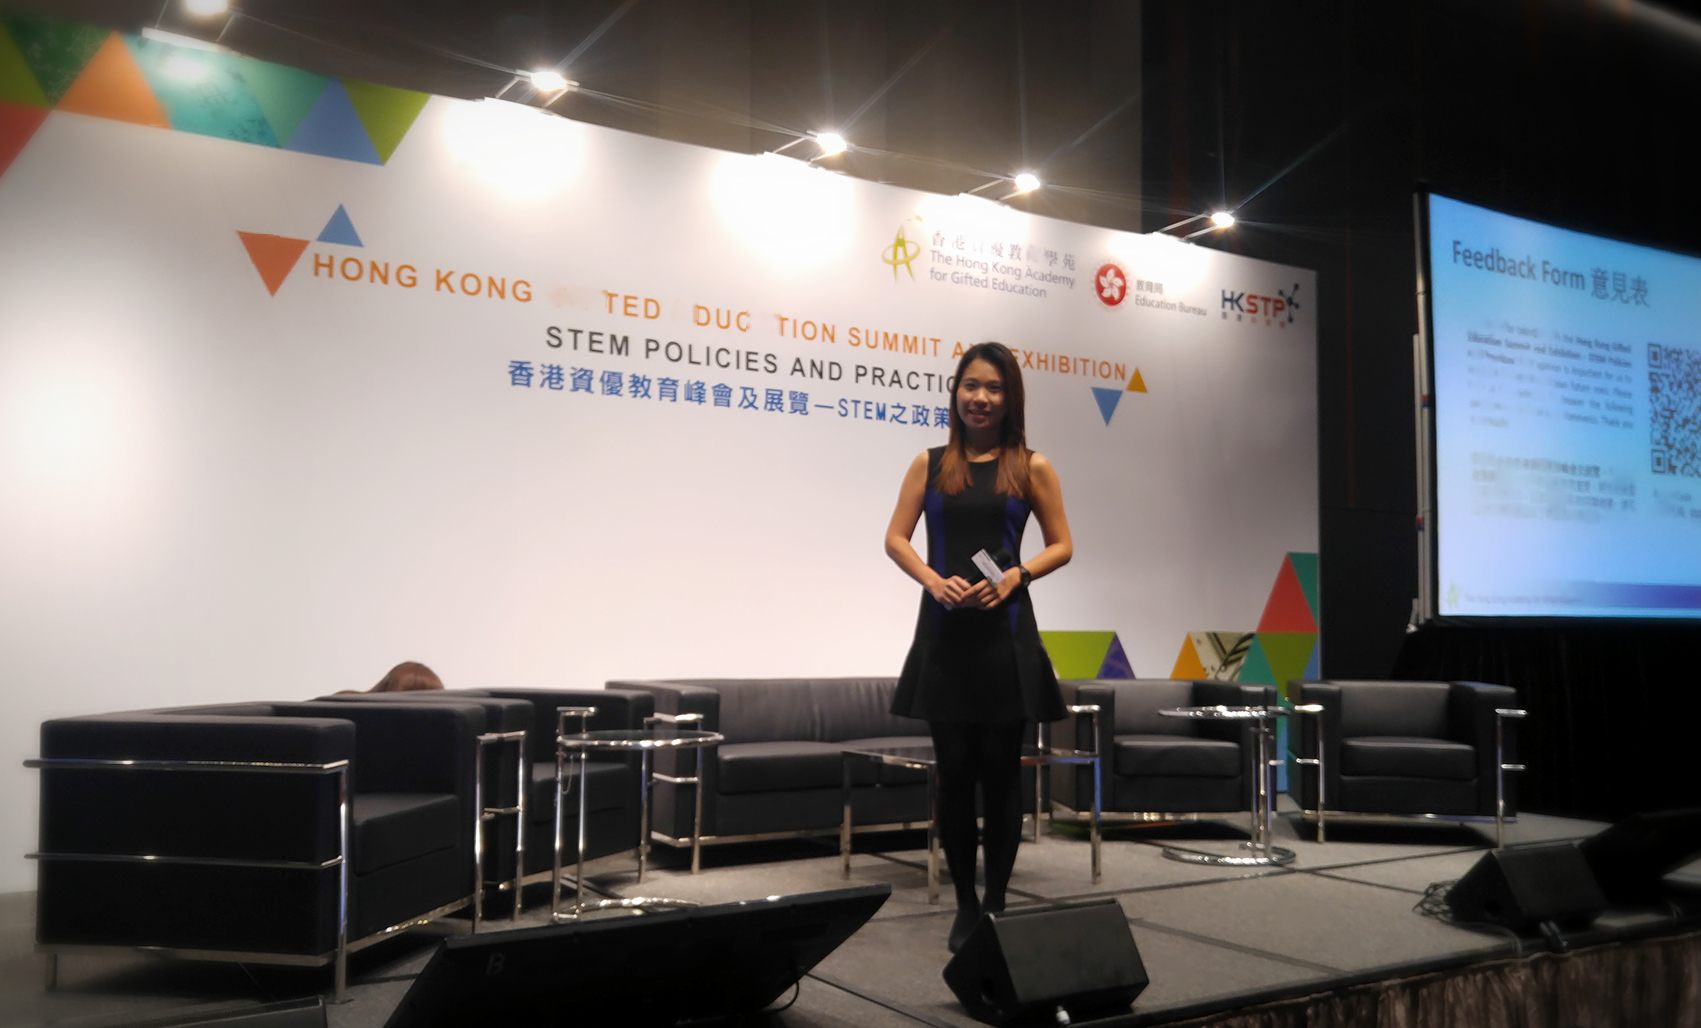 梁雯婷 Agnes Leung司儀工作紀錄: 香港資優教育峰會及展覽 - STEM之政策與實踐 1